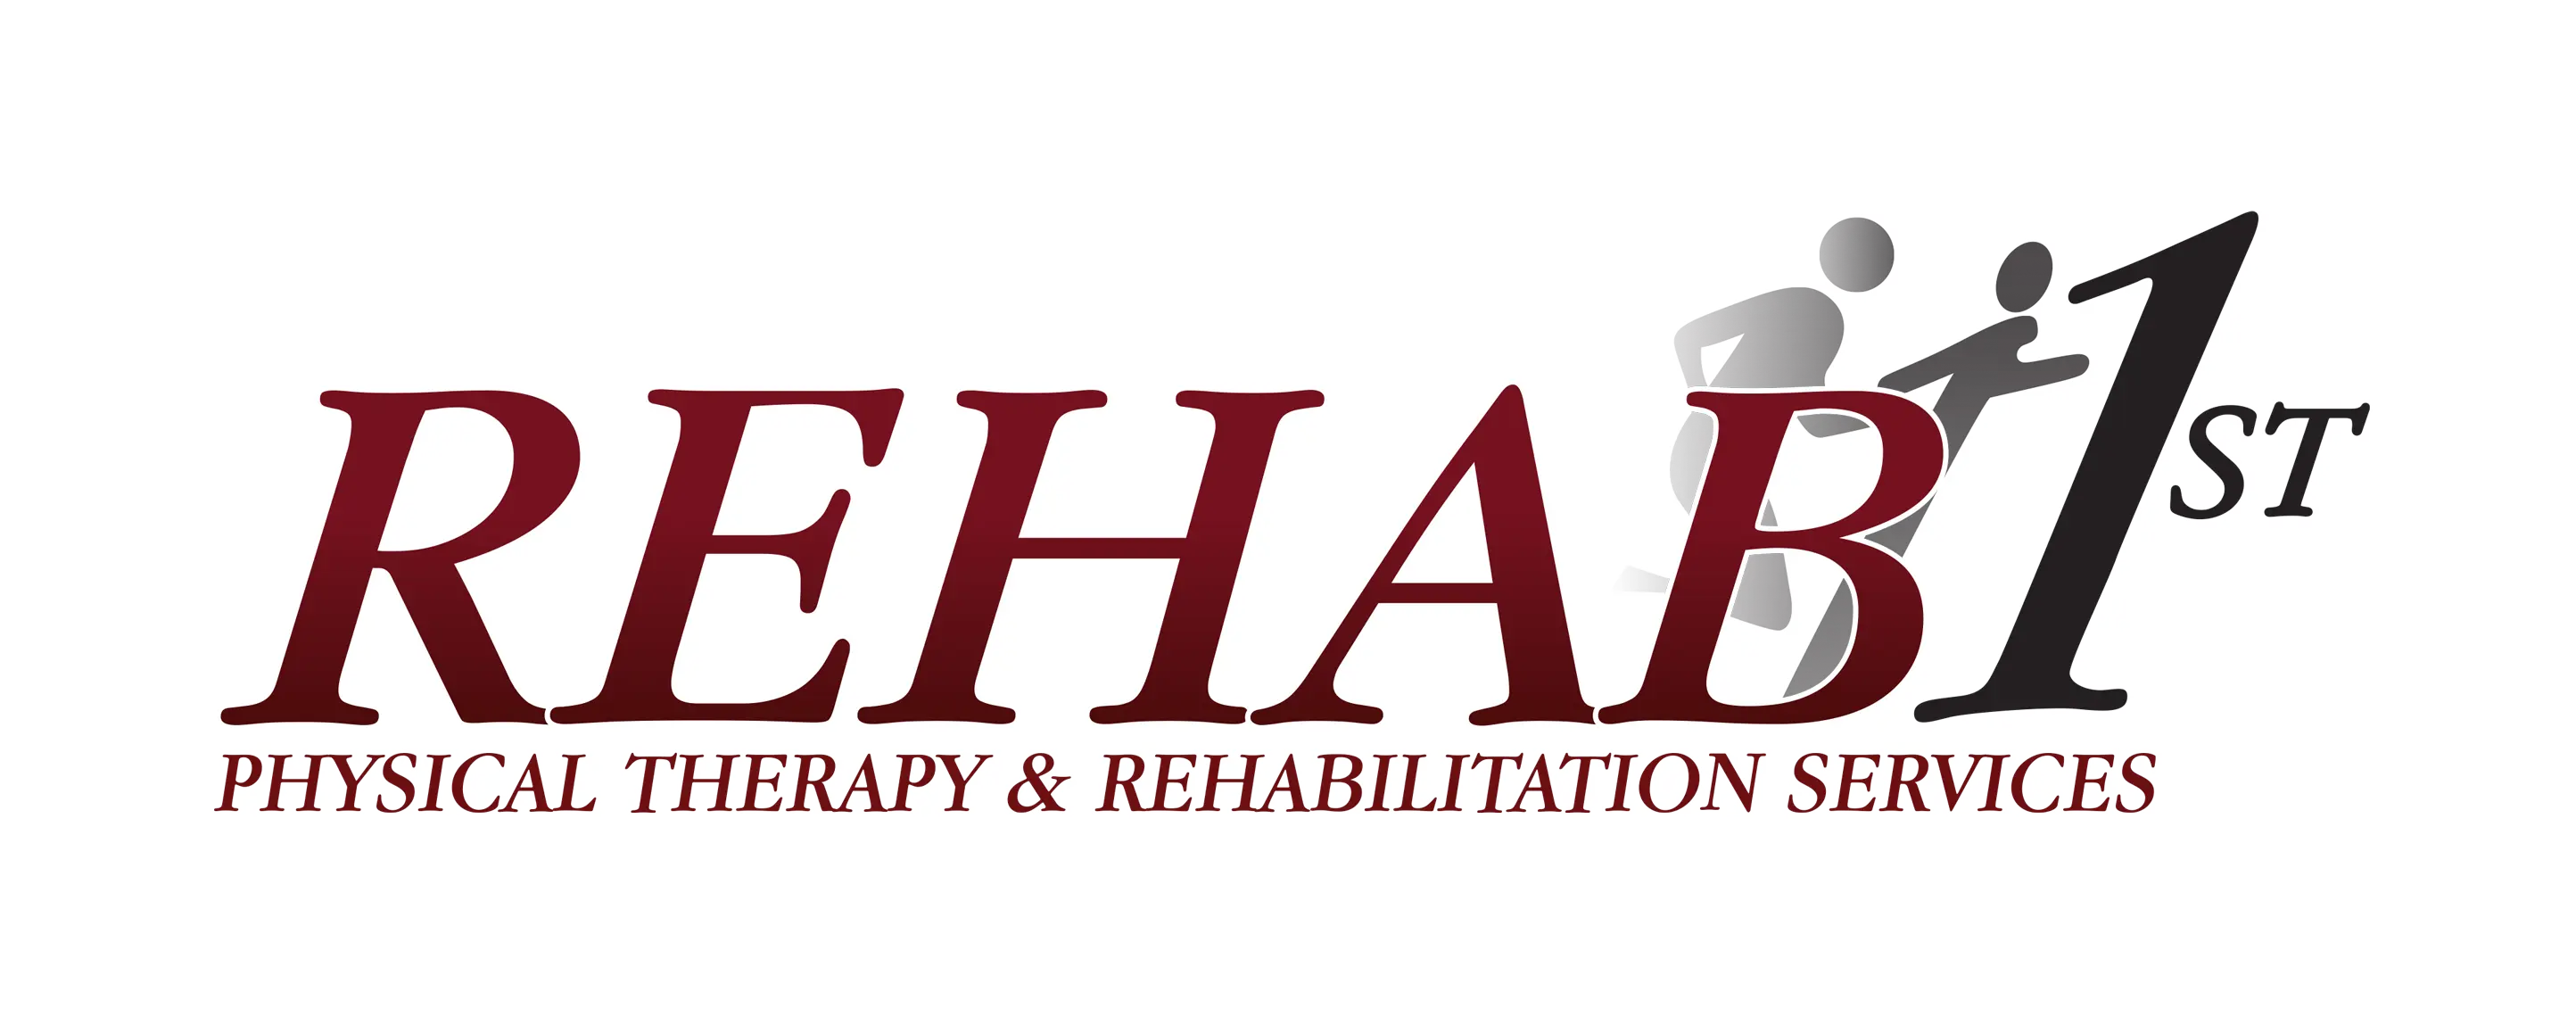 Rehab 1st Logo